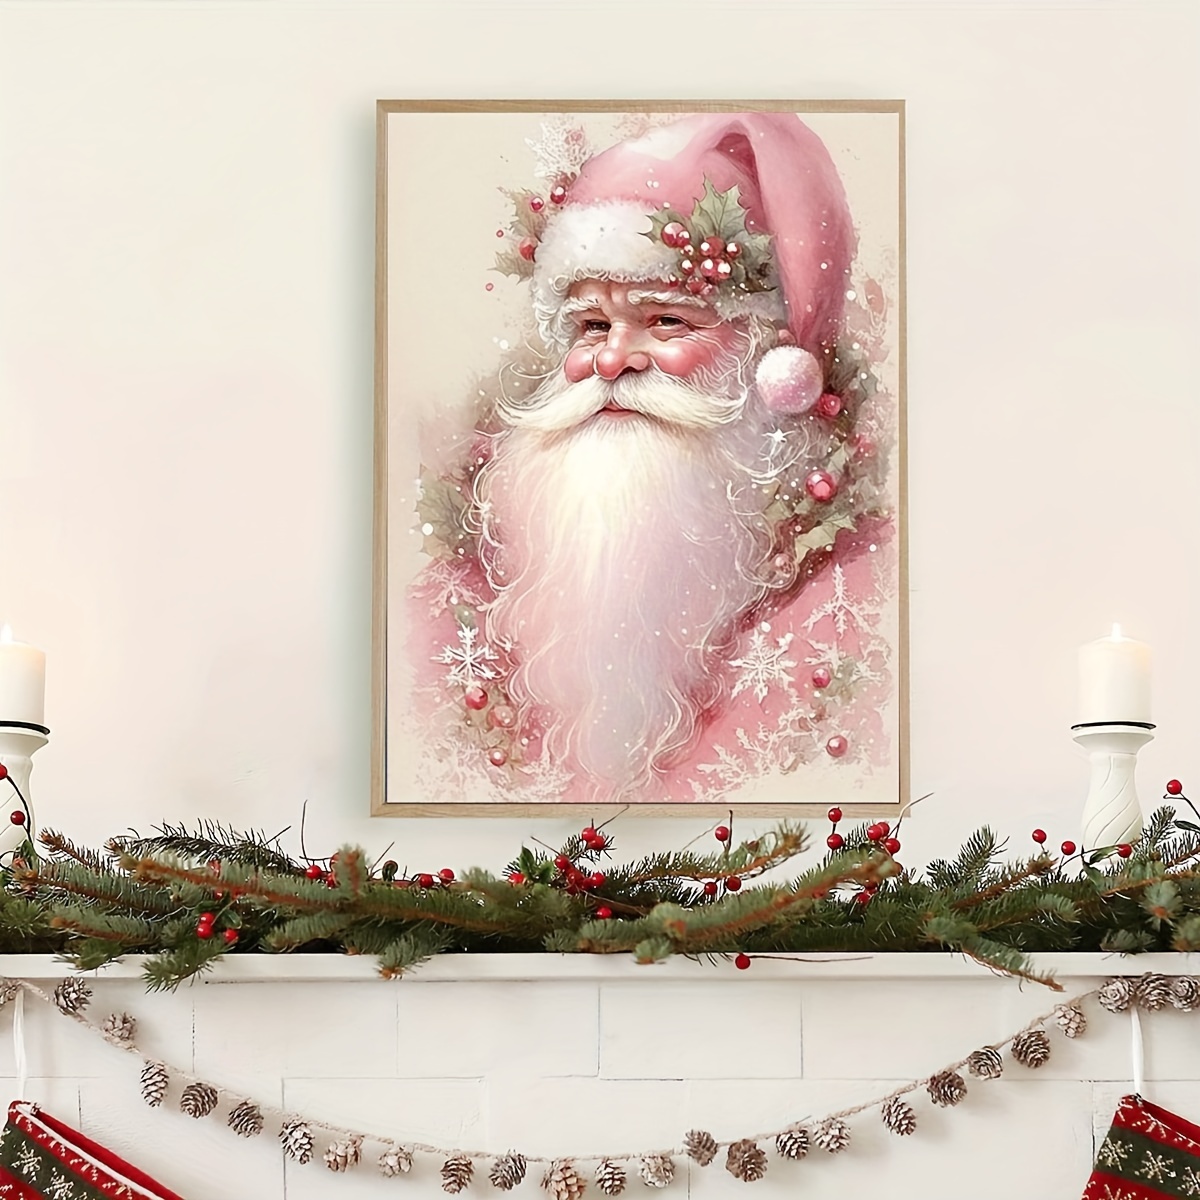  2 pares de calcetines para patas de silla, fundas de silla de  Navidad, calcetines y decoraciones de silla, patas de elfo de Navidad y  patas de Papá Noel para sillas, decoración